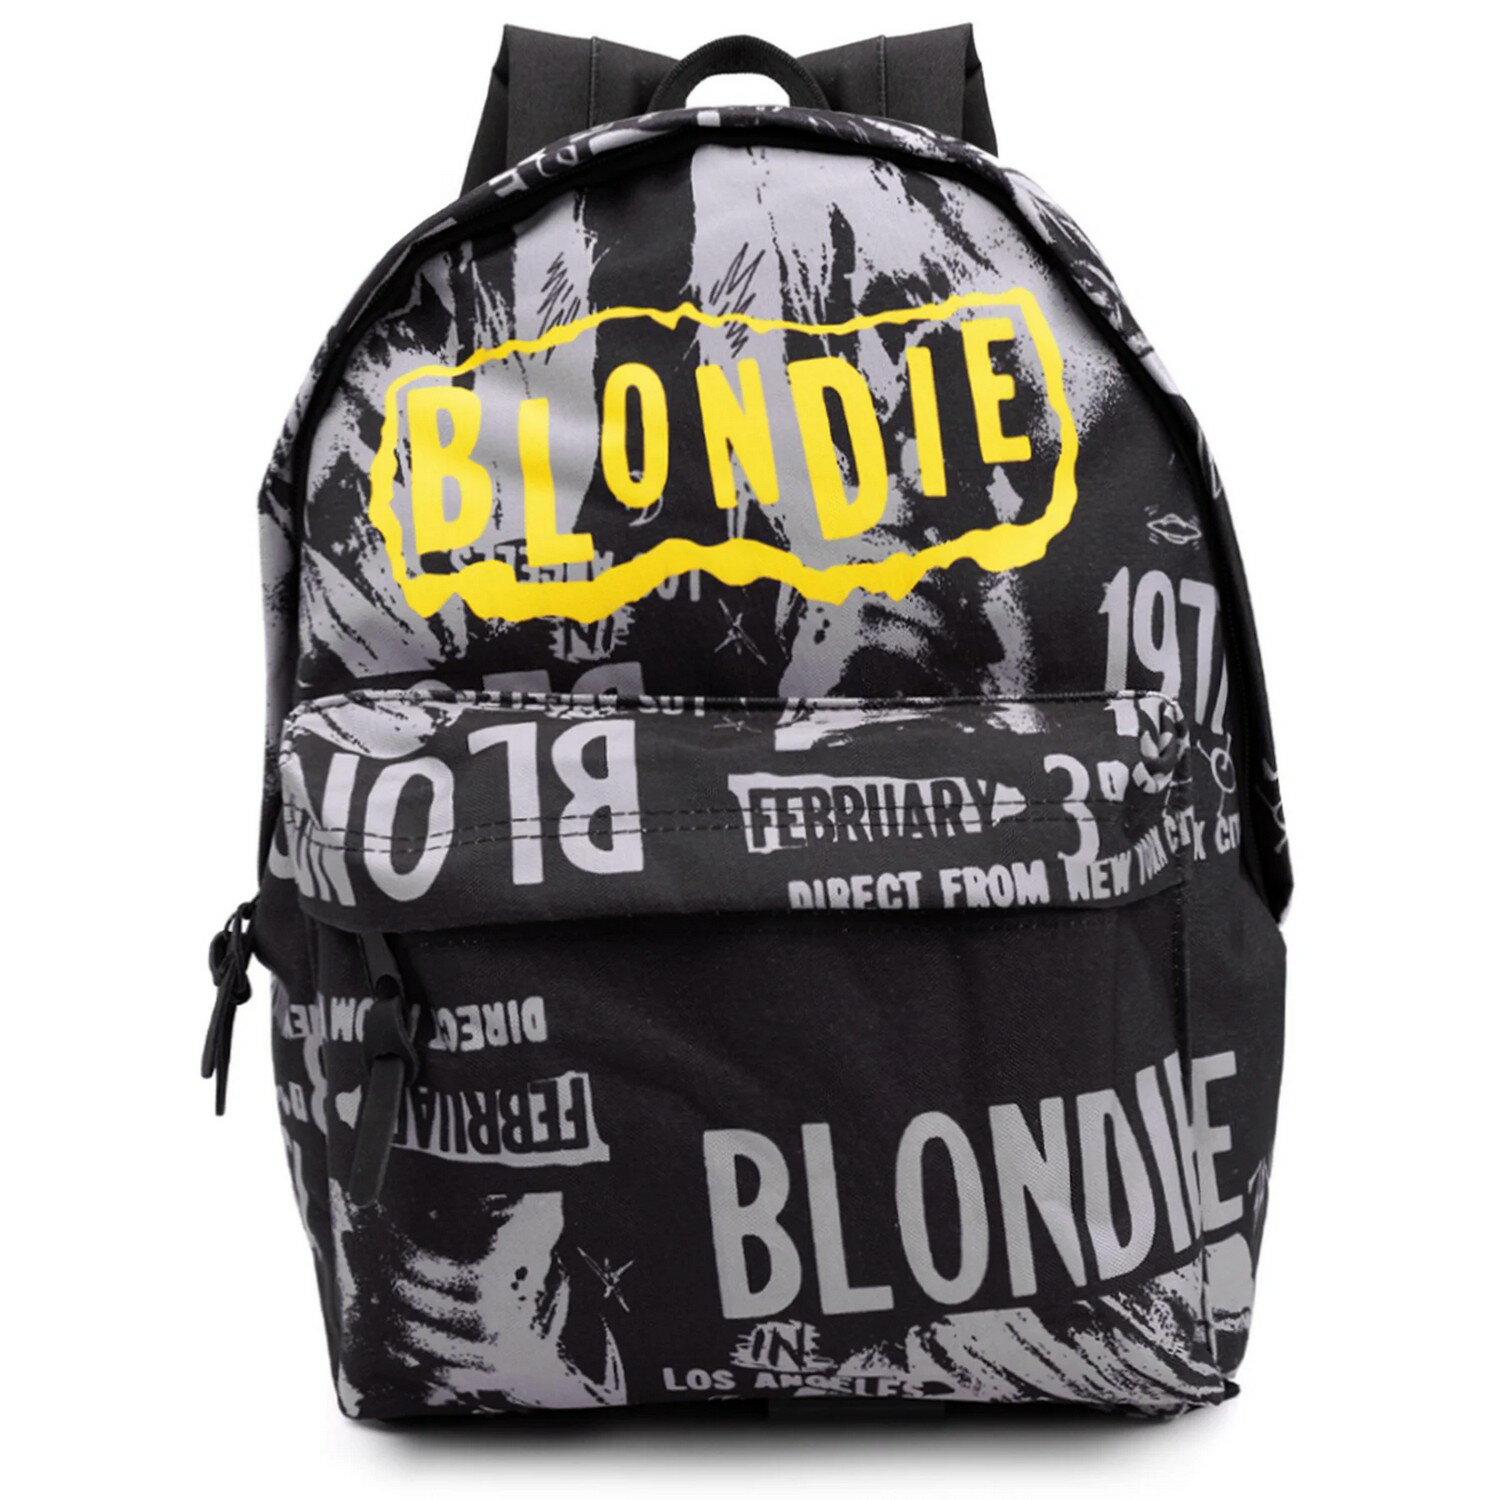 (ブロンディ) Blondie オフィシャル商品 3rd February 1977 リュック LAコンサート バックパック かばん 【海外通販】